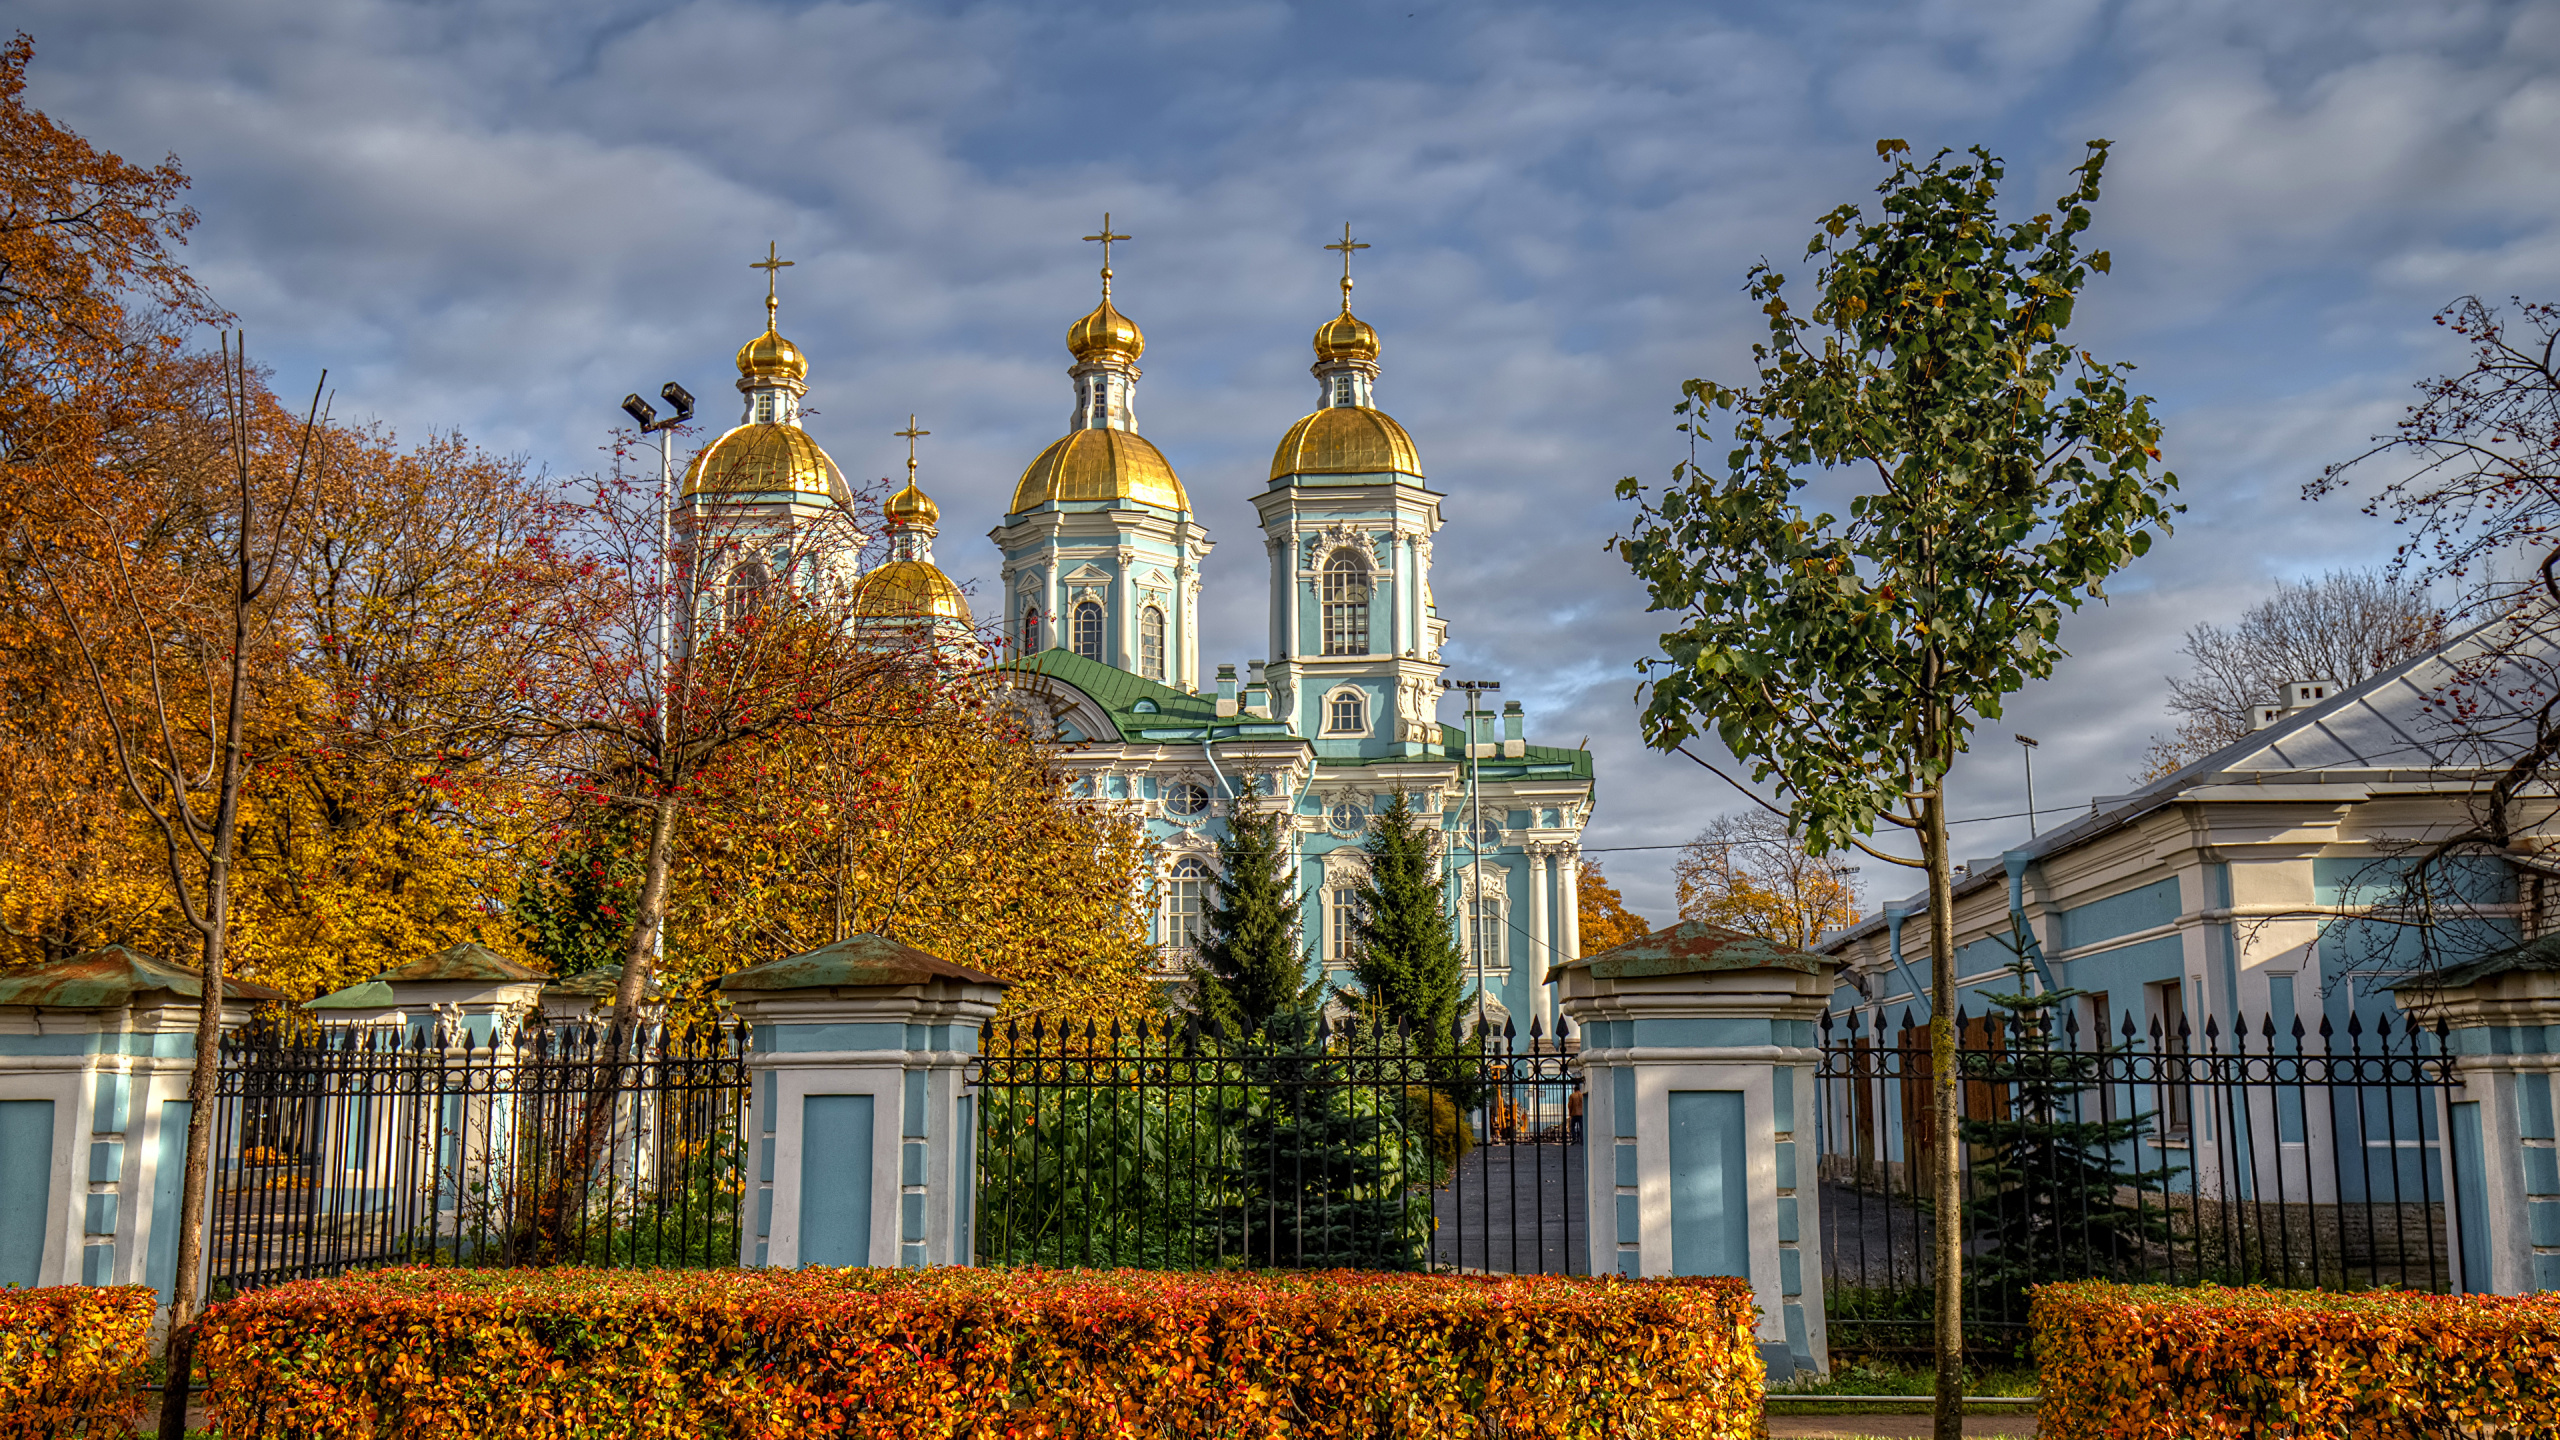 寺庙, 里程碑, 天空, 圣彼得堡, 旅游景点 壁纸 2560x1440 允许